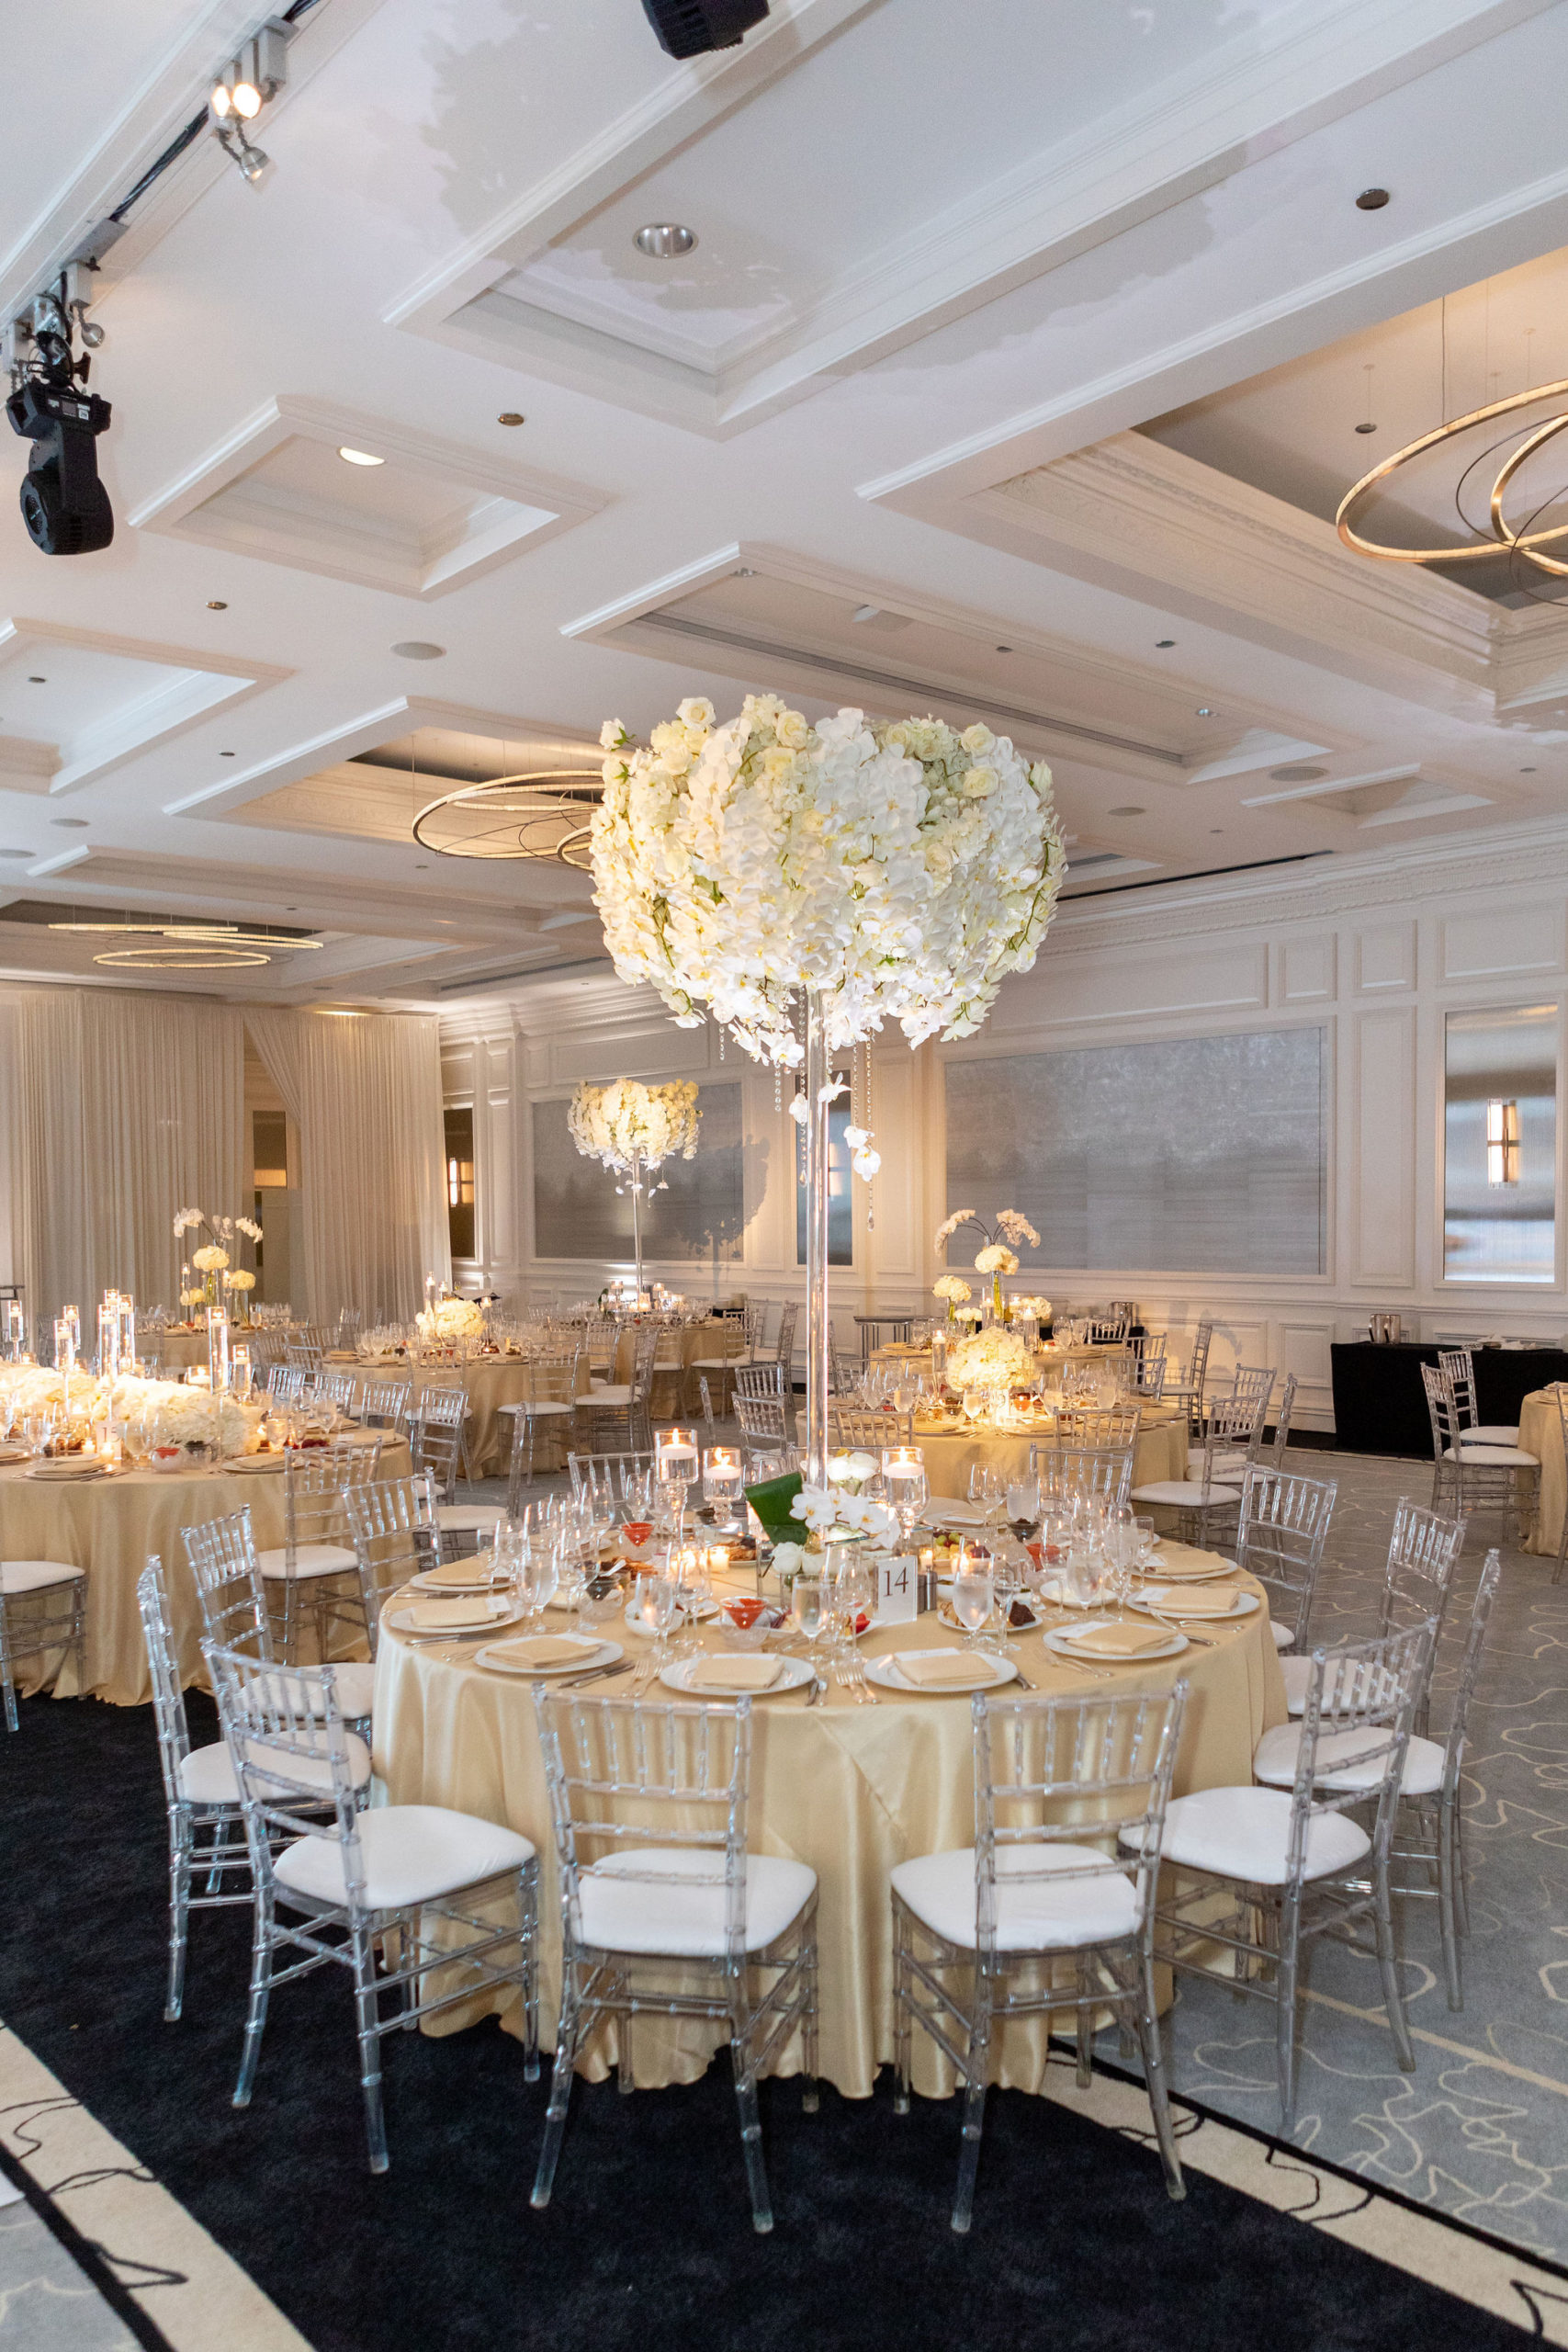 Ballroom & Wedding Reception Venue in Chicago